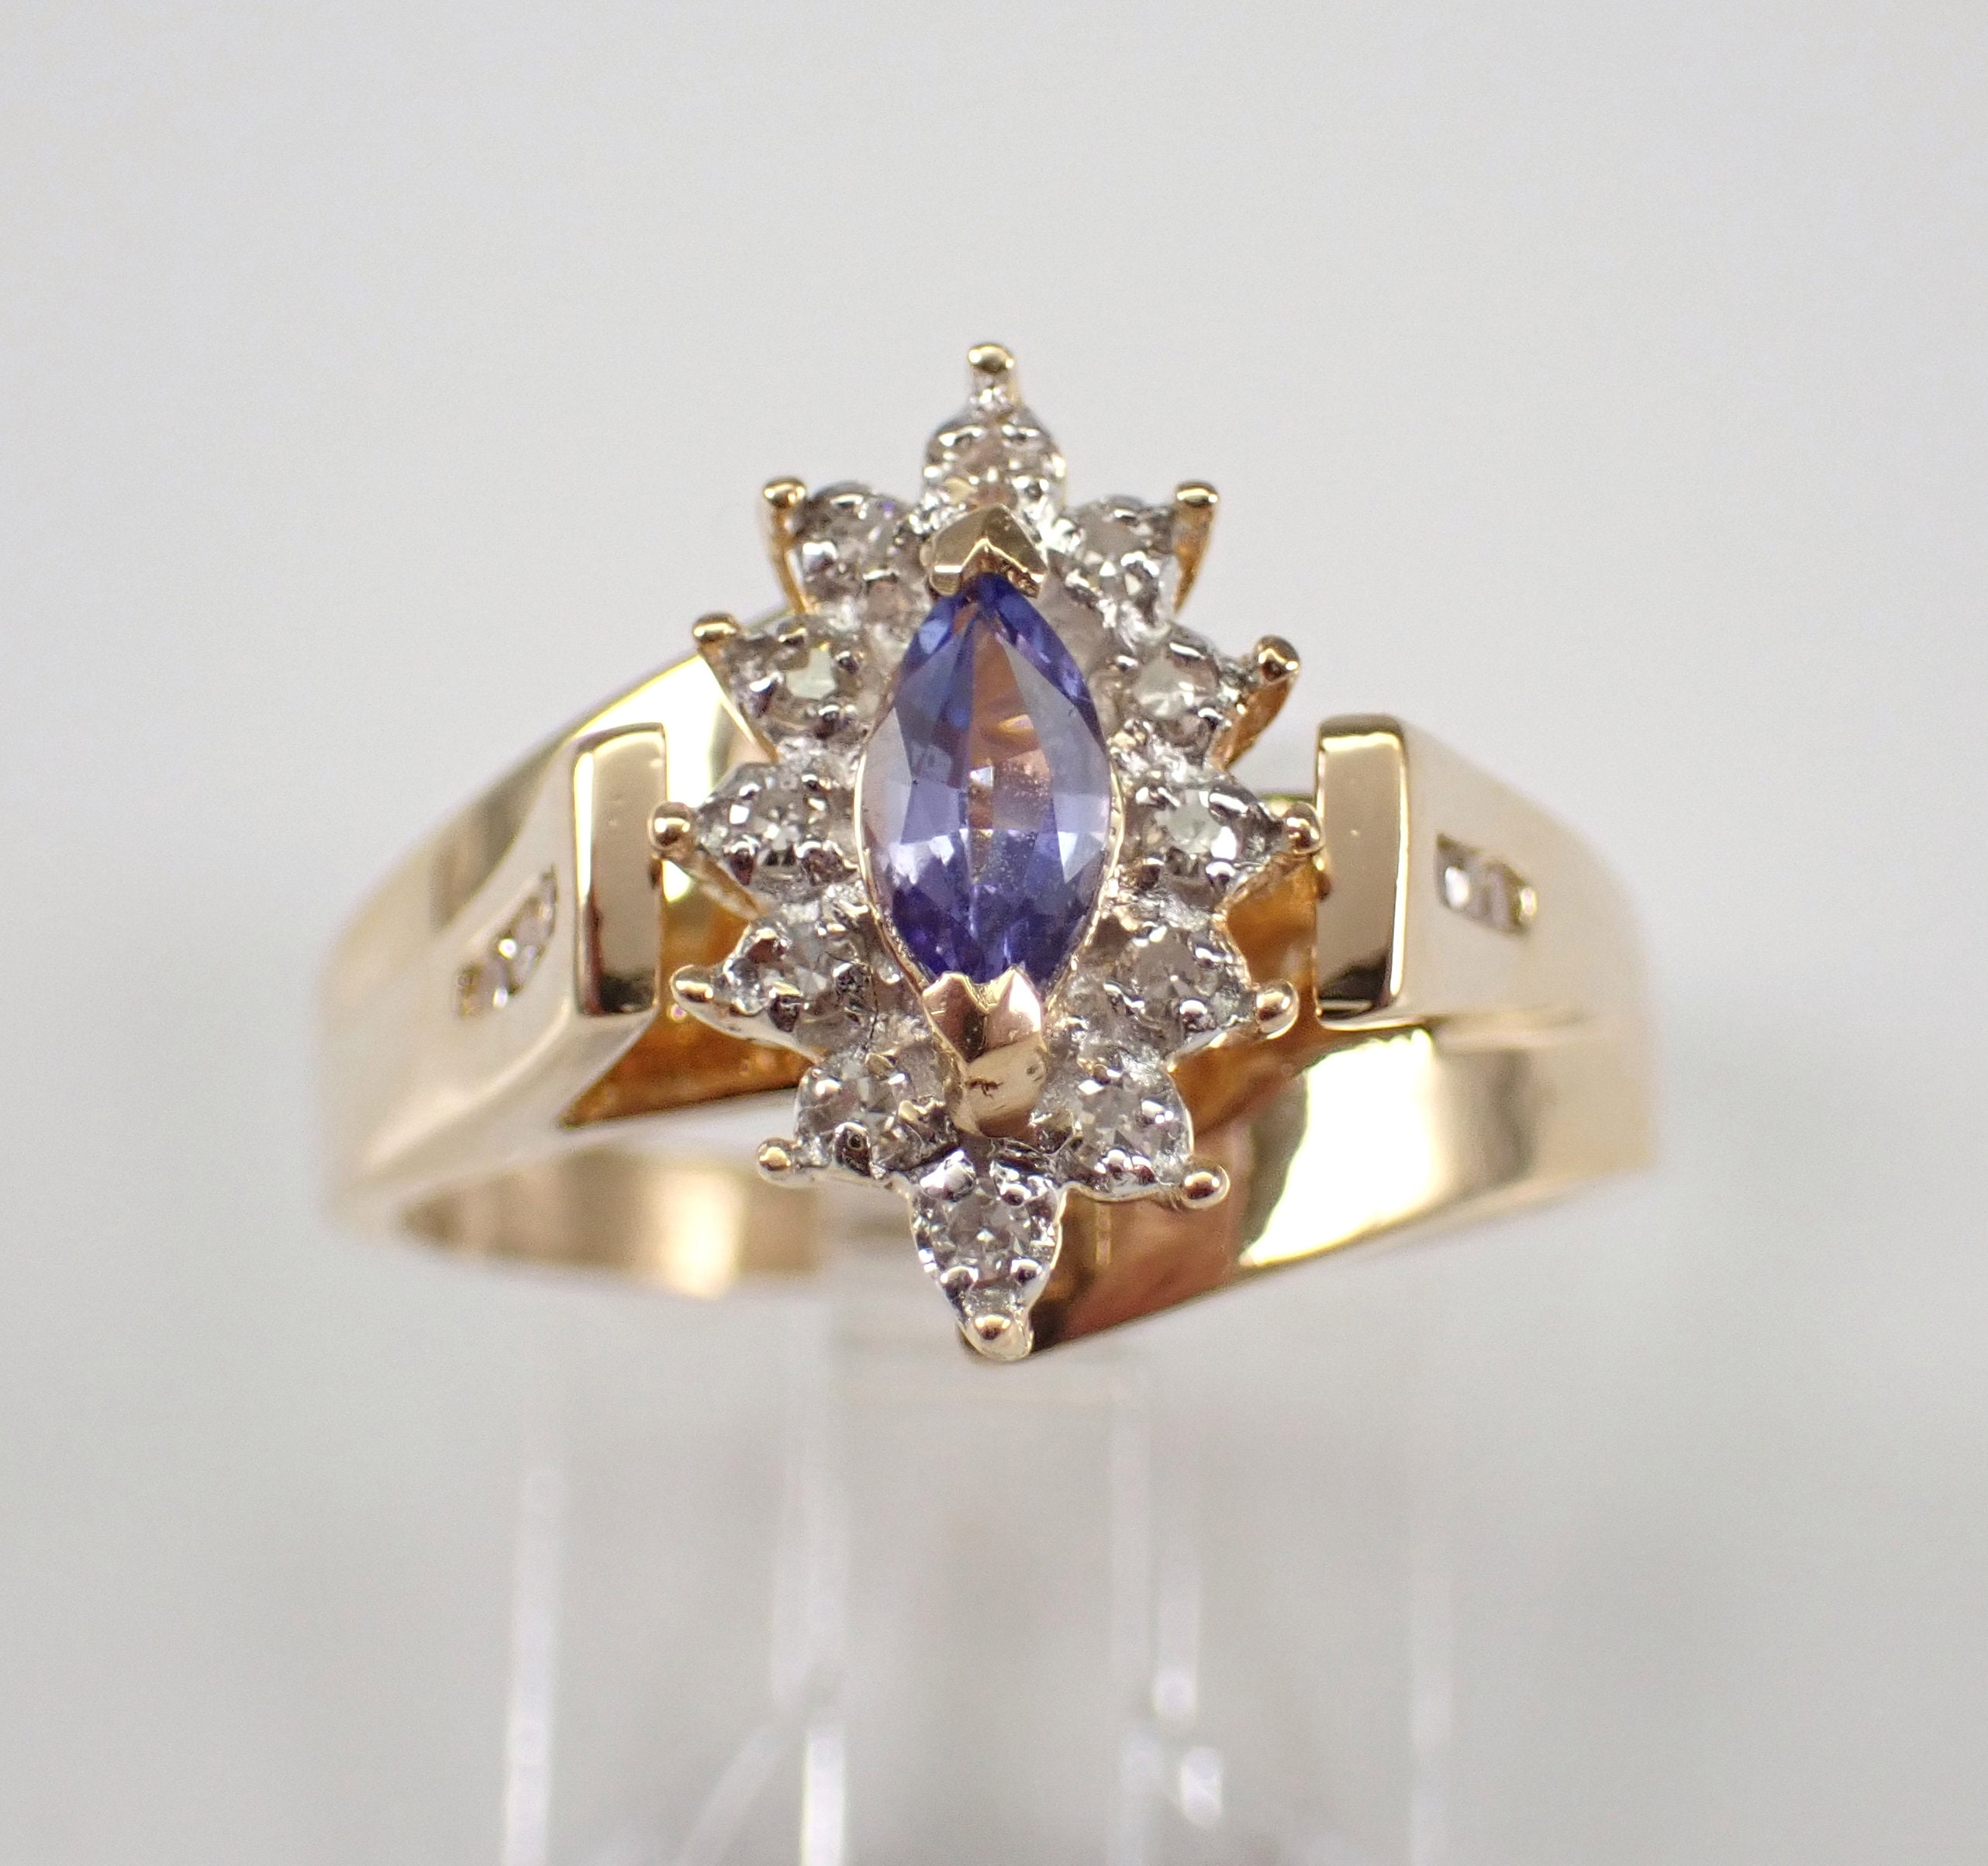 Antique Tanzanite Ring, Vintage Ring, Tanzanite Ring, Diamond Ring, Rose  Gold Ring, Solid 14kt Gold Ring, Tanzanite Engagement Ring, Gift - Etsy